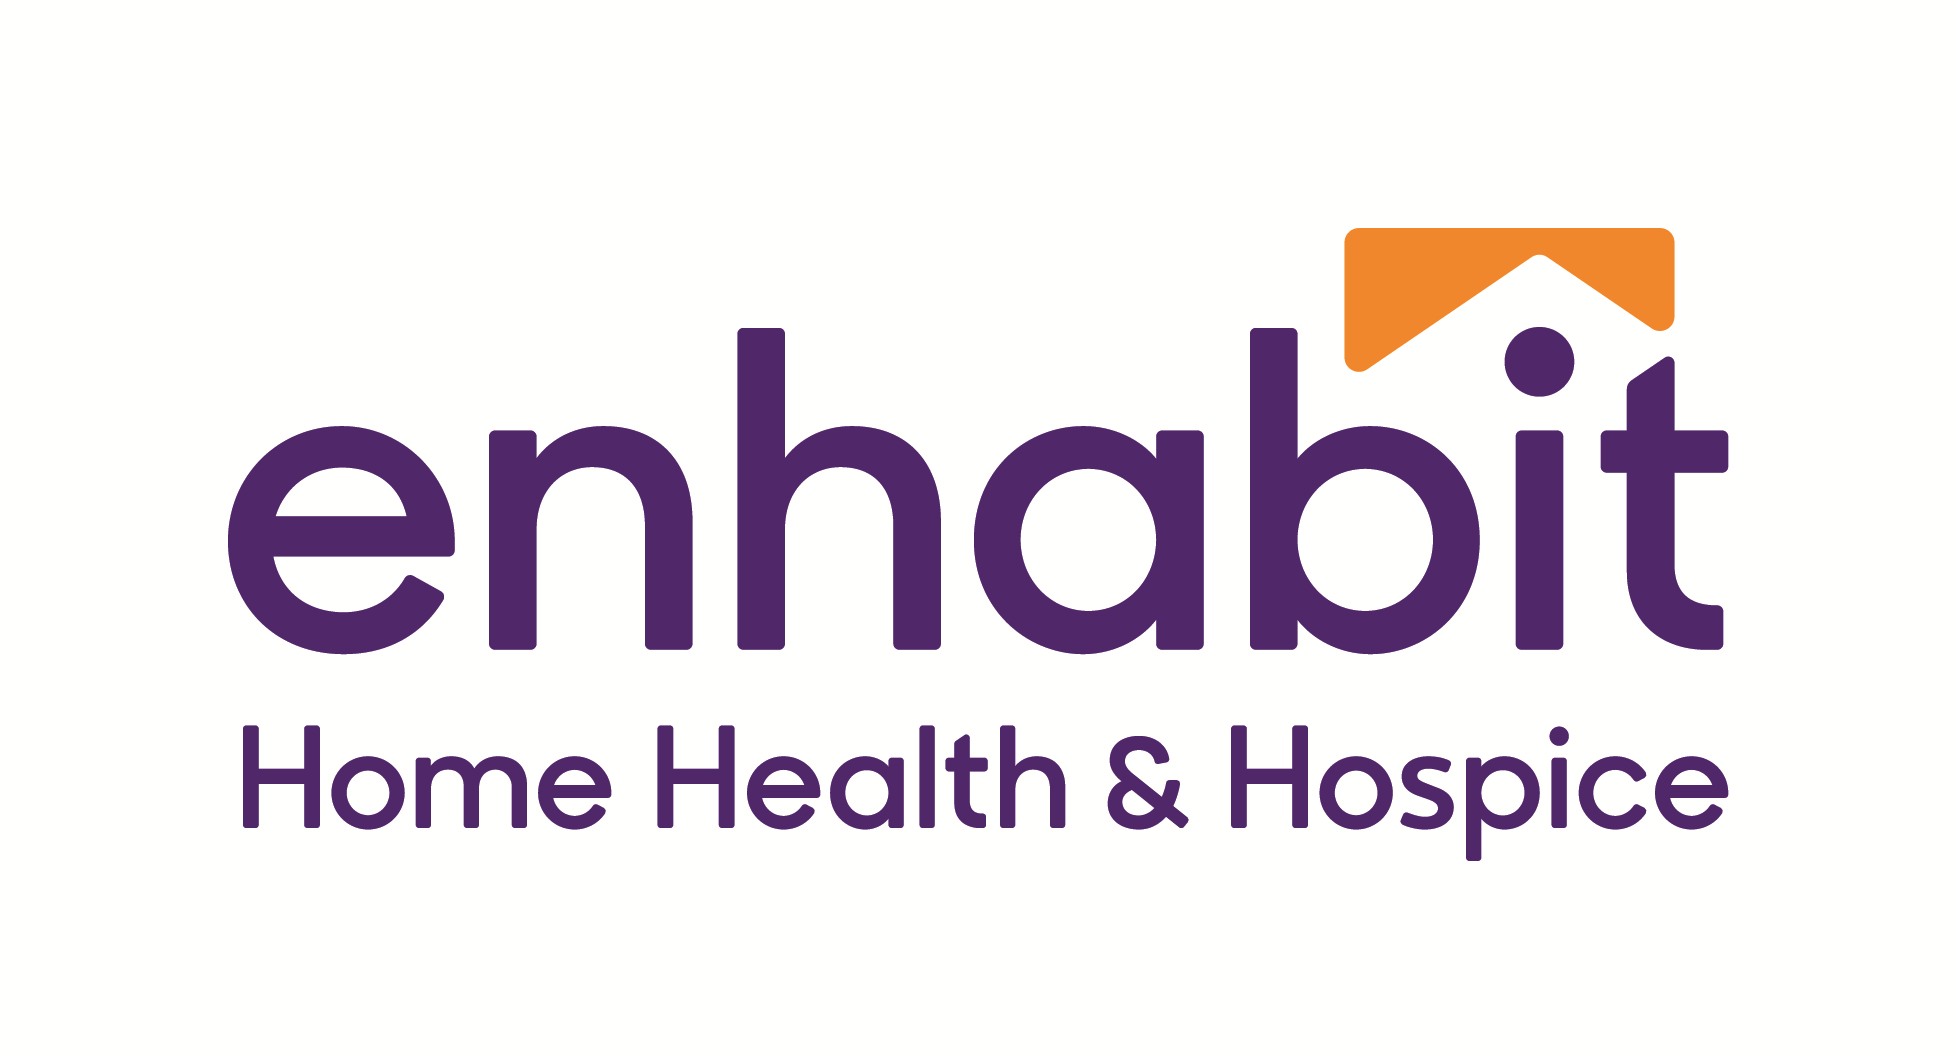 EncompassHealth - Home Health & Hospice Company Logo